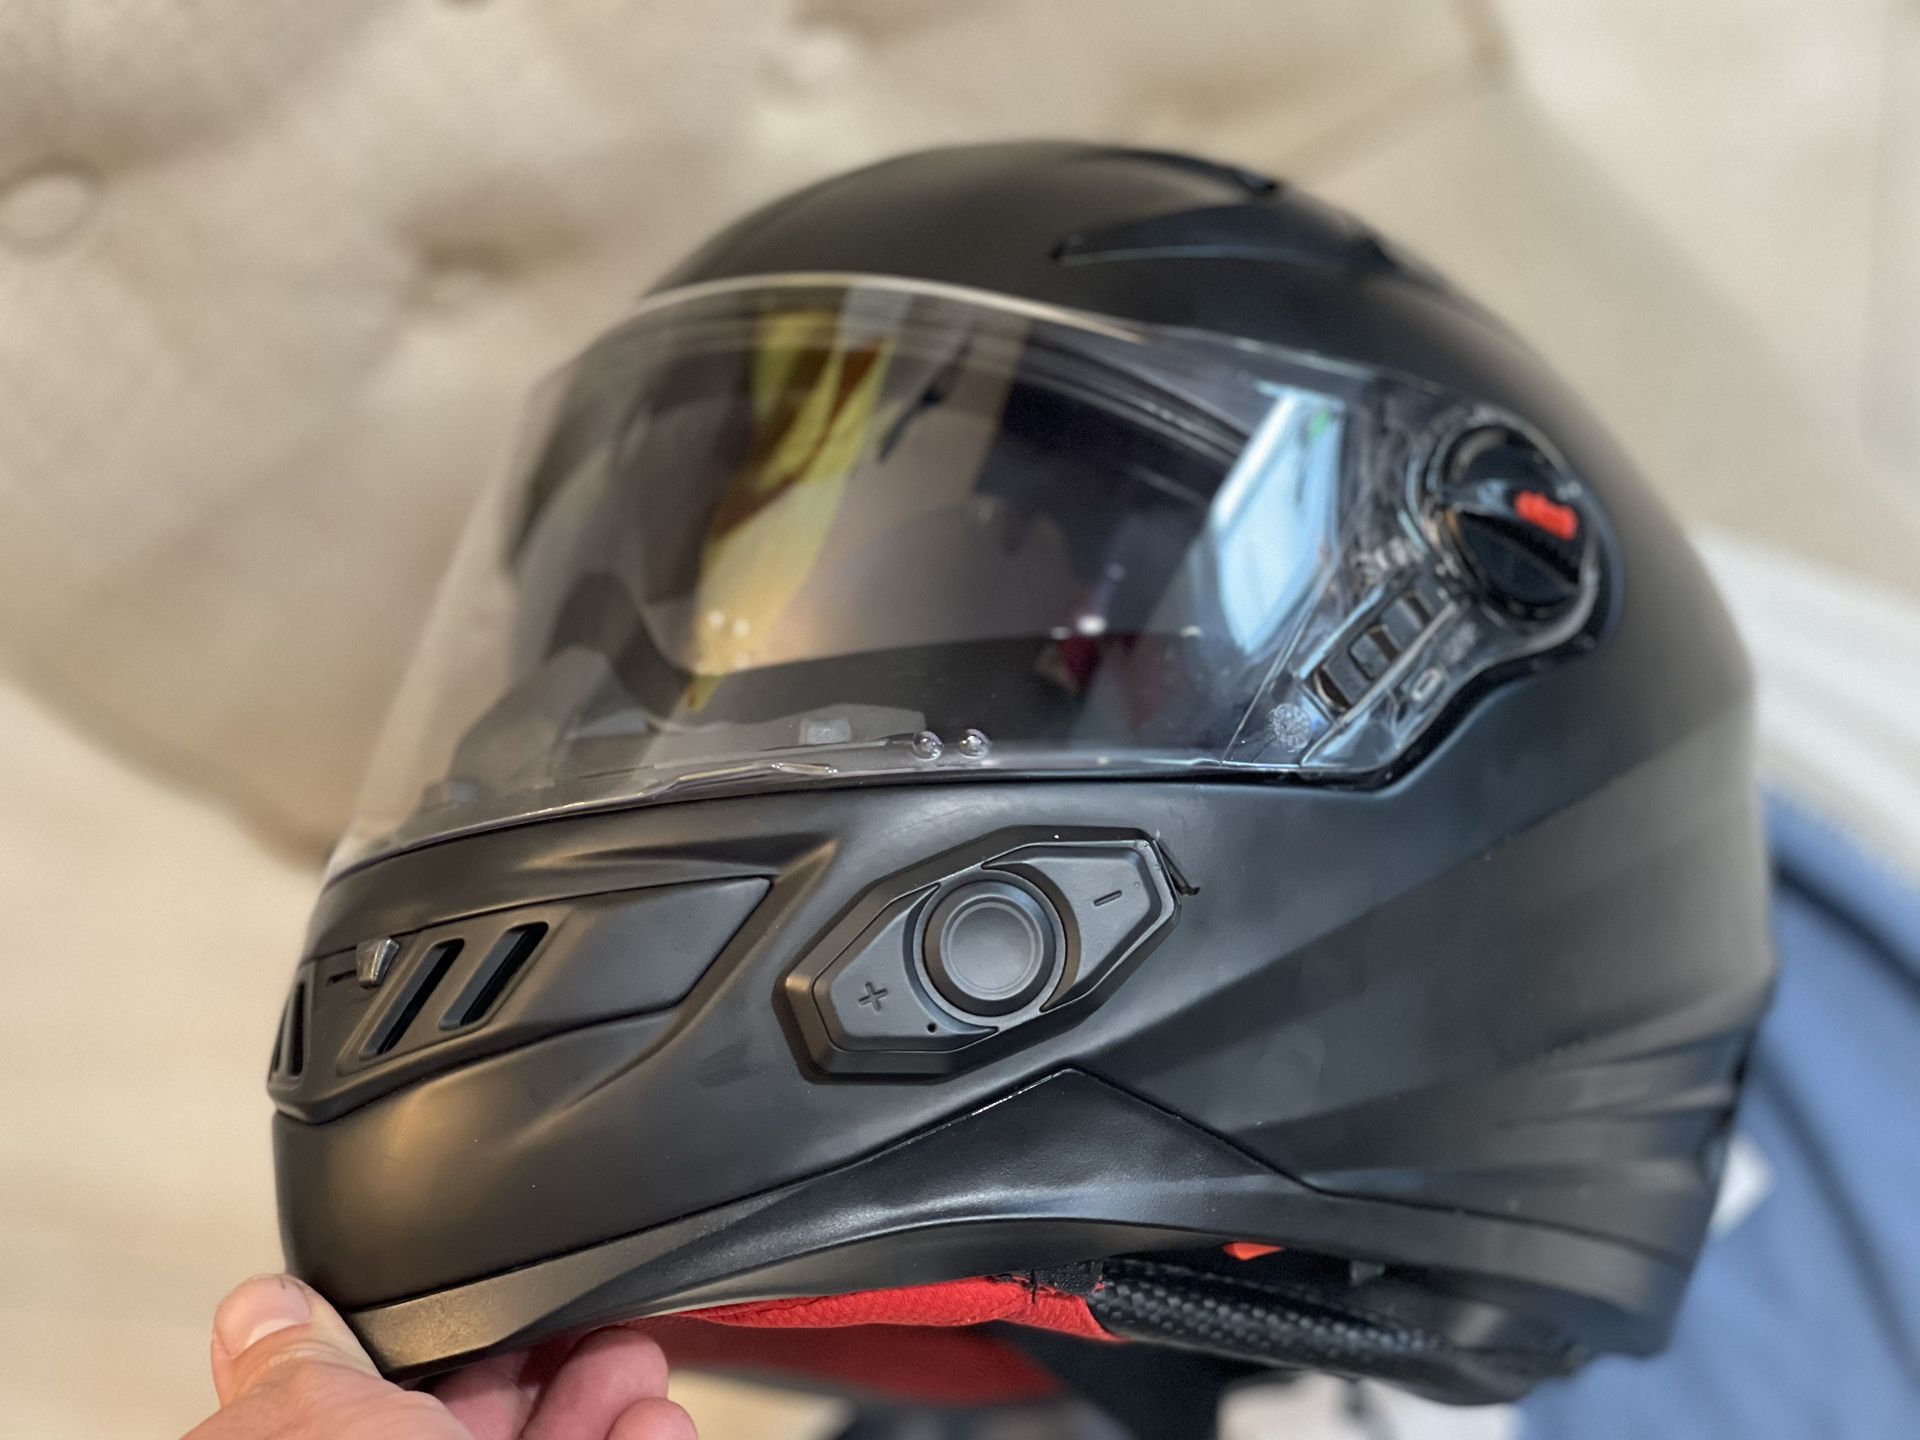 BILT motorcycle helmet (Size Large) - techno 2.0 Sena Bluetooth